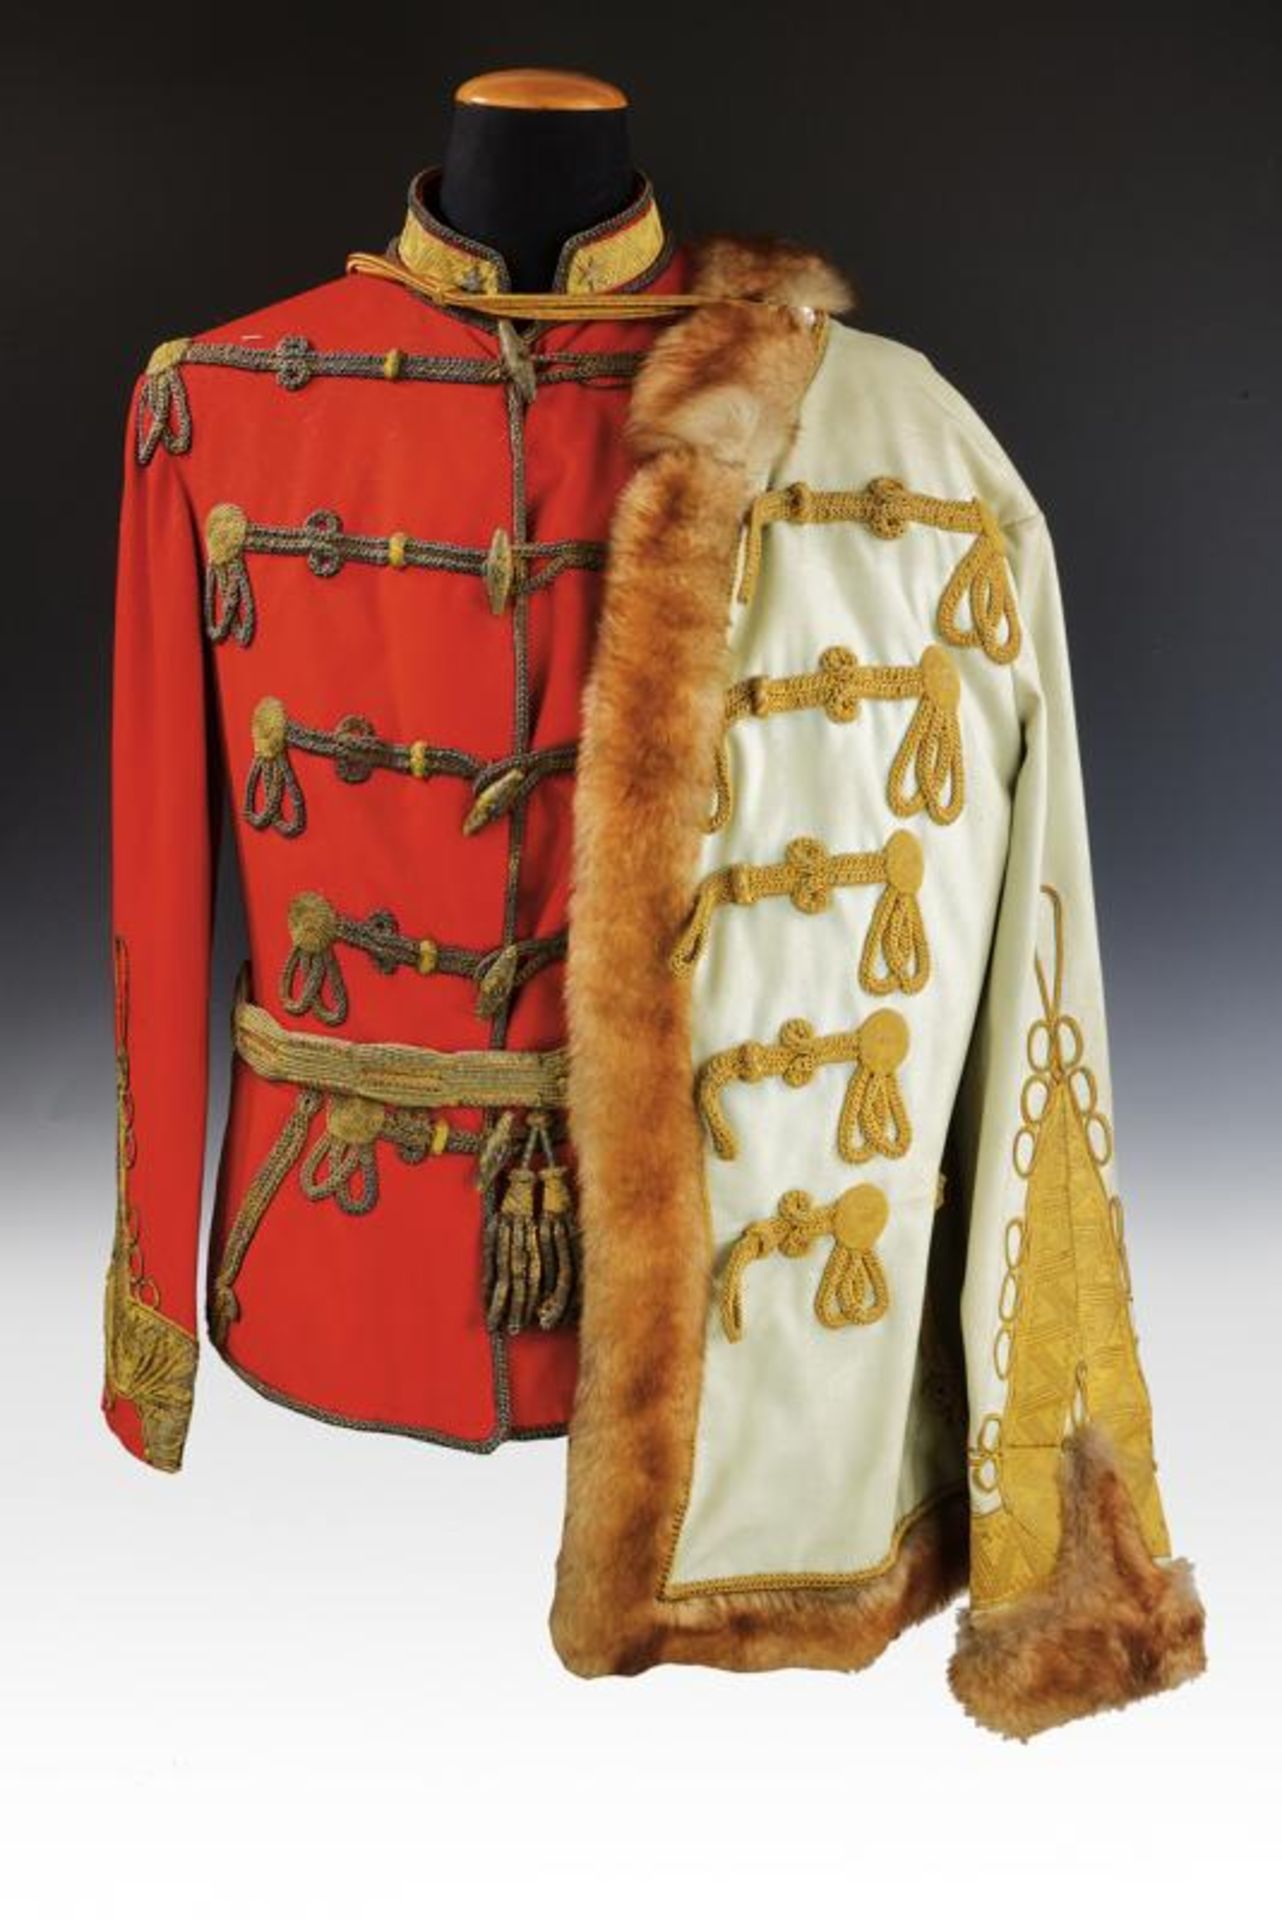 A general major's attila with Pelz